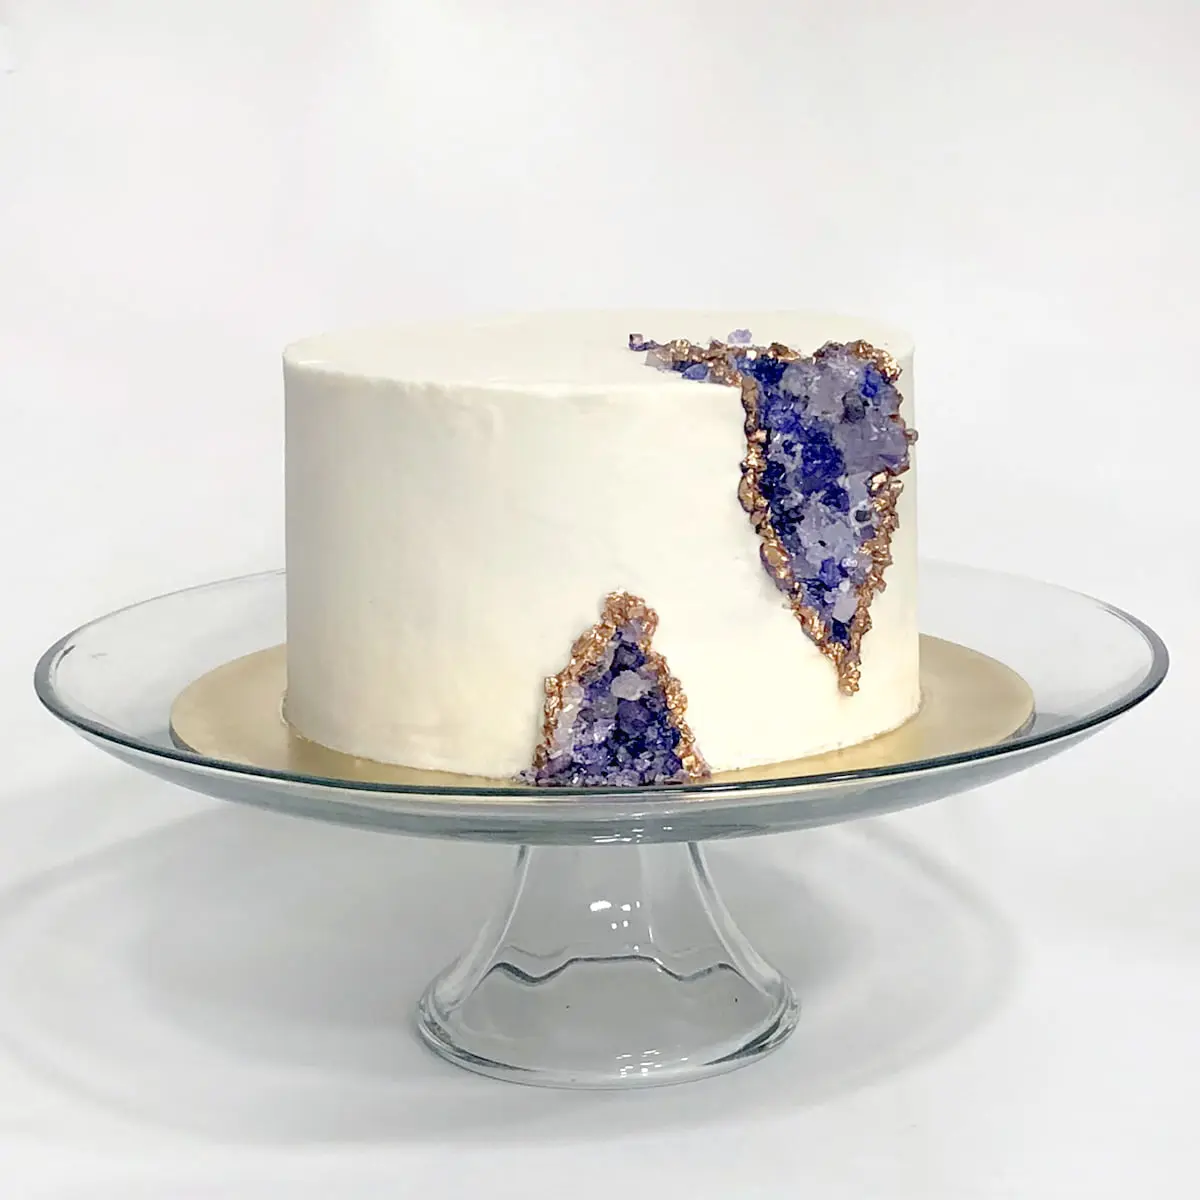 crystallized blueberry cake decor｜TikTok Search